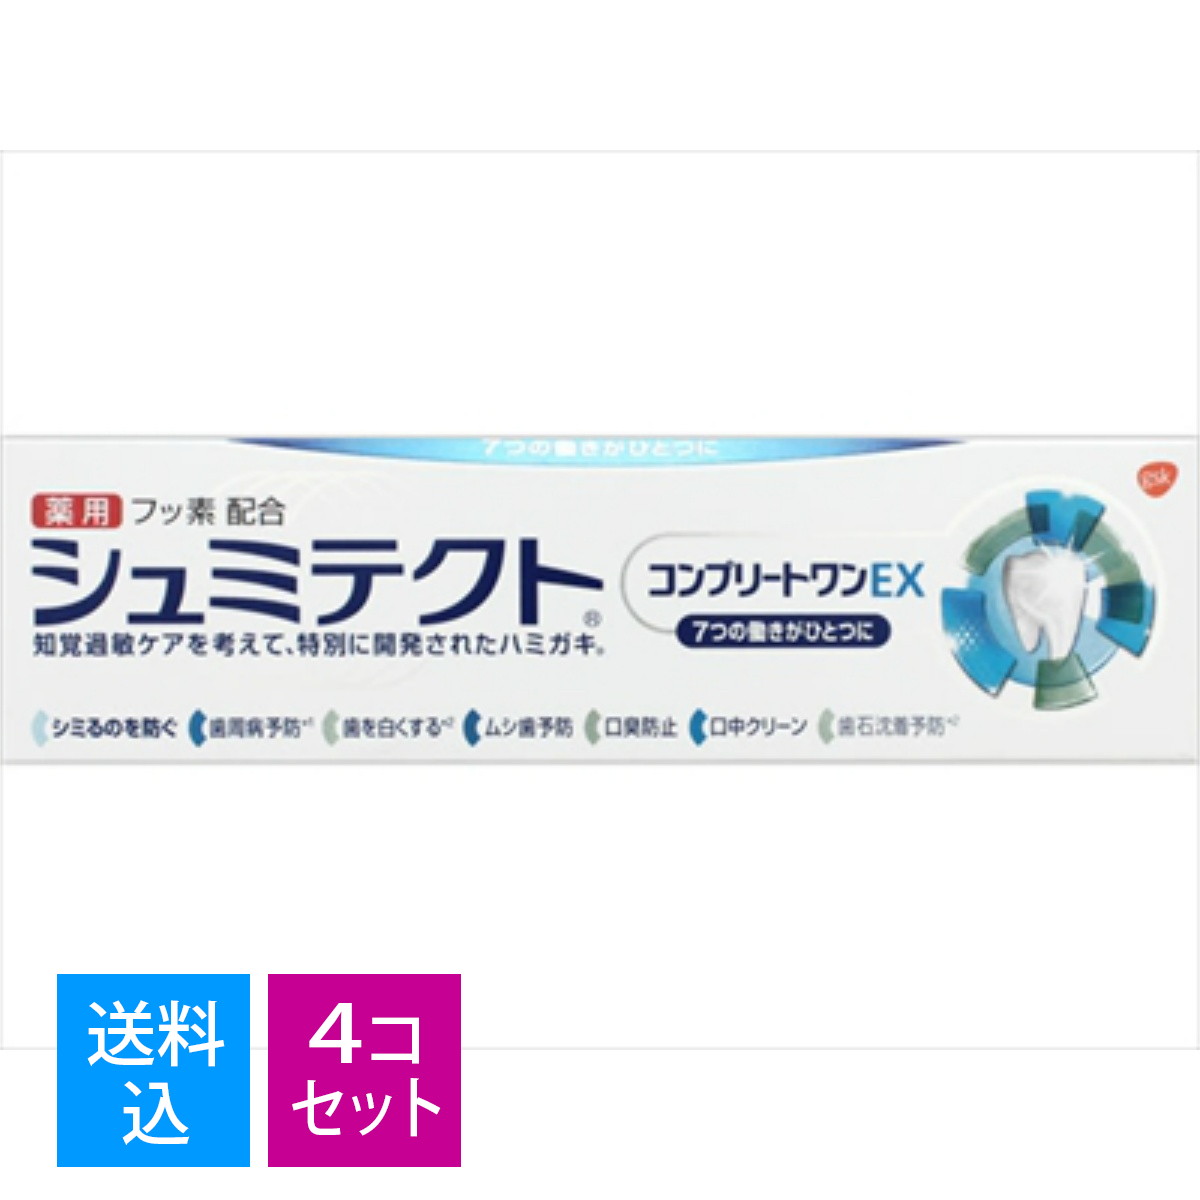 グラクソスミスクライン 薬用 シュミテクト コンプリートワンEX 90g 医薬部外品 歯磨き粉